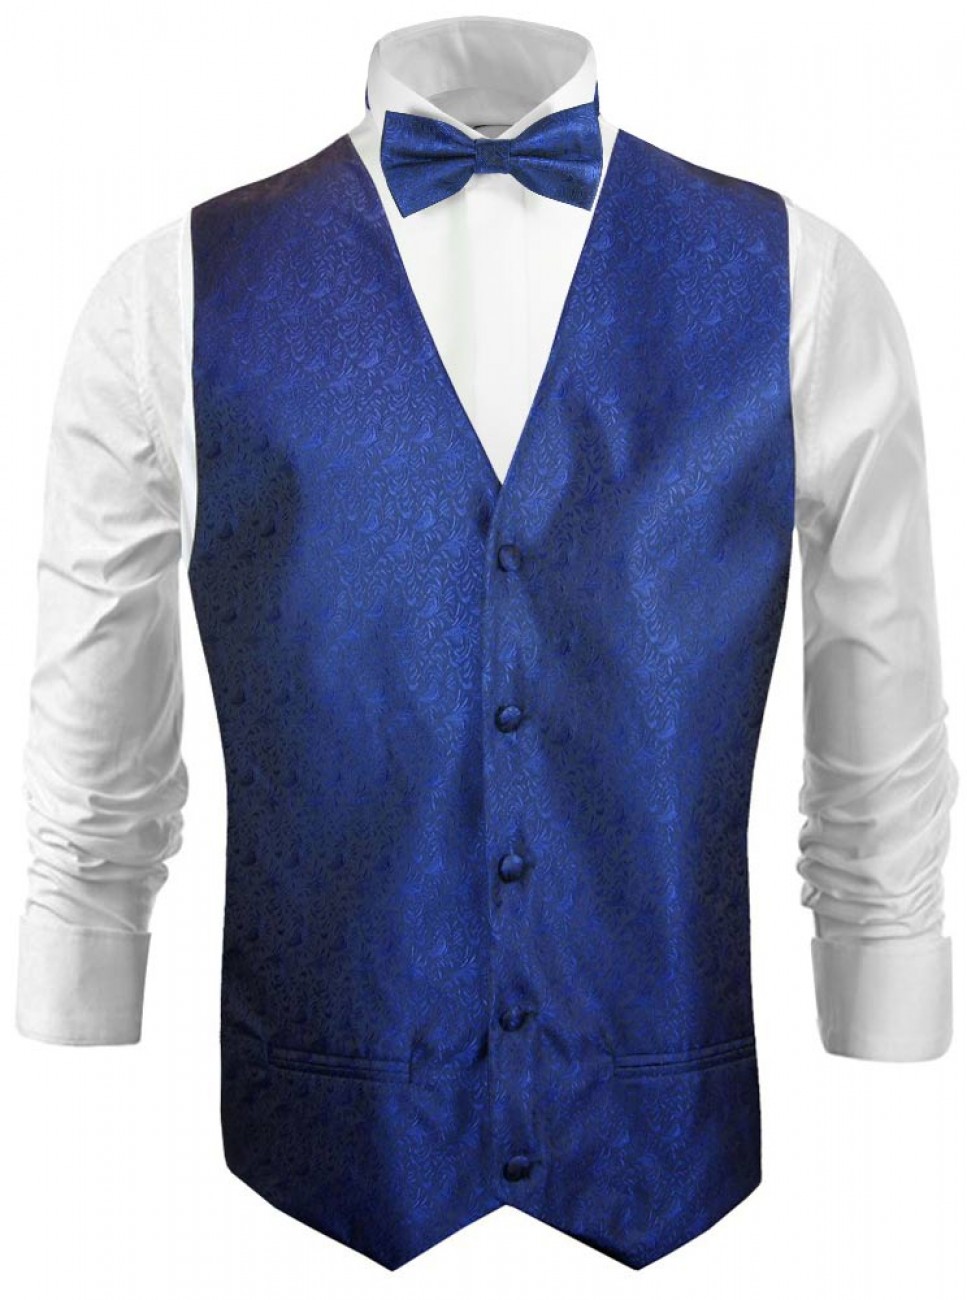 Wedding vest waistcoat royal blue